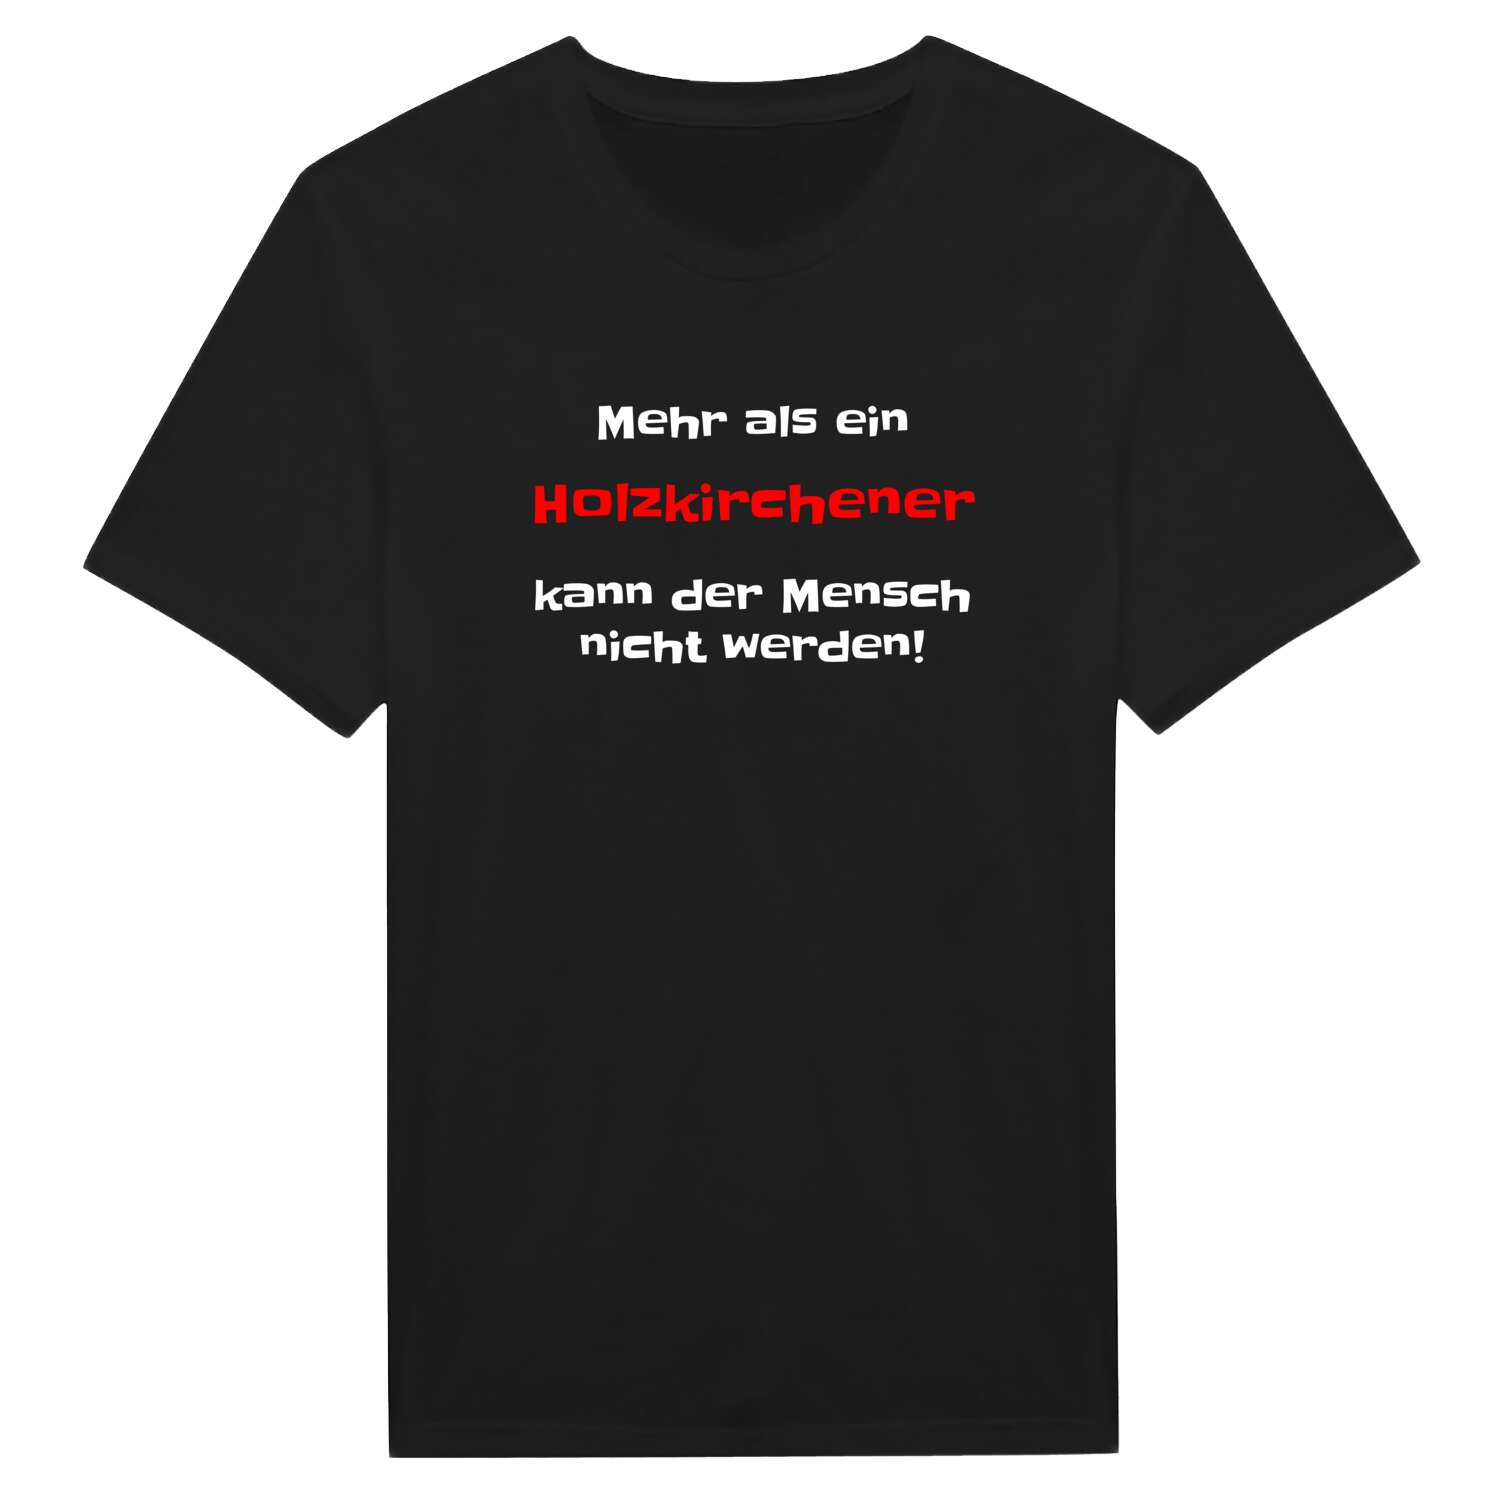 Holzkirchen T-Shirt »Mehr als ein«